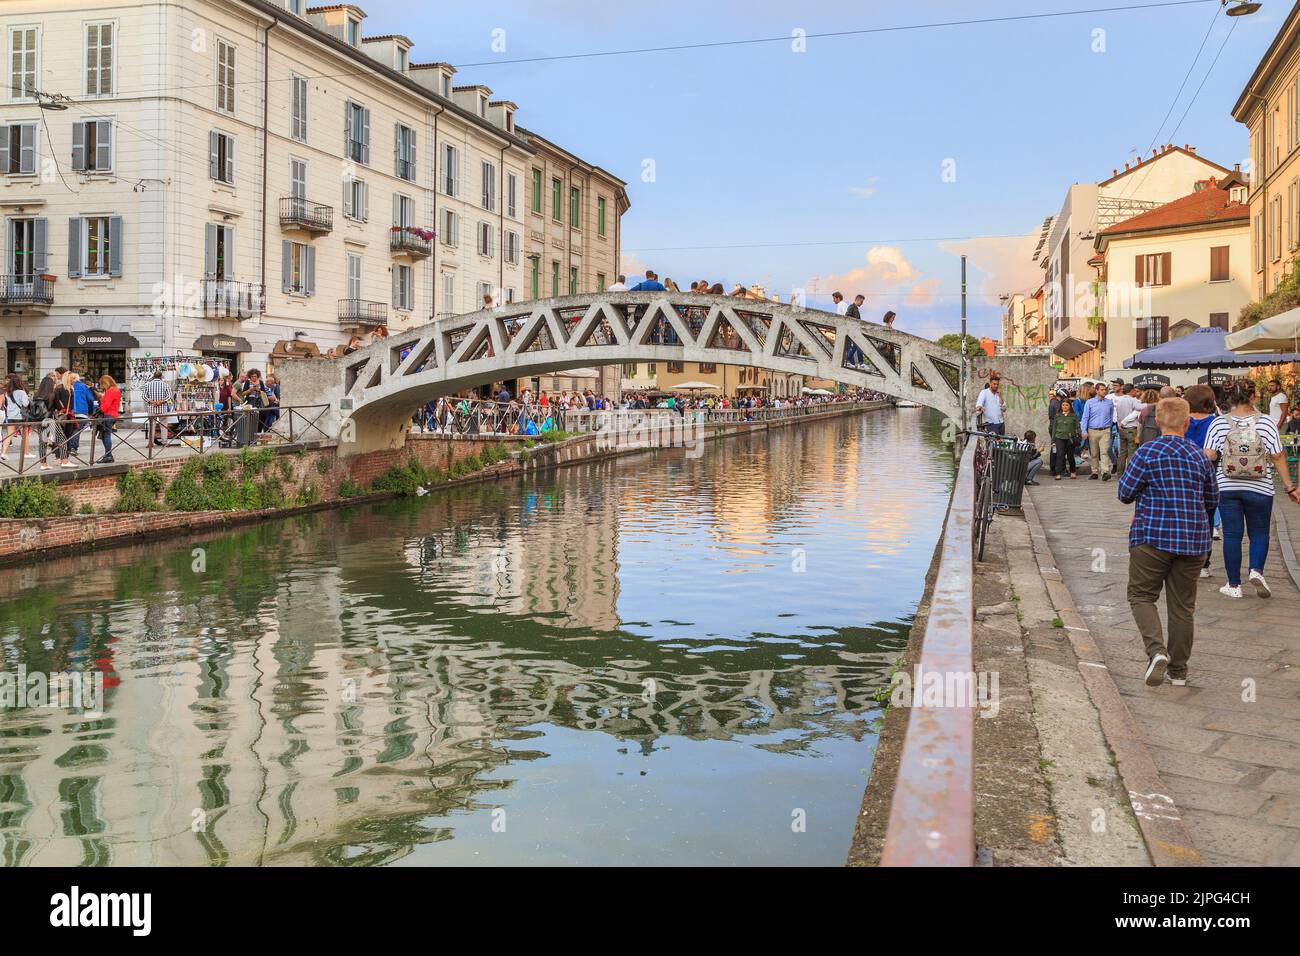 MAILAND, ITALIEN - 12. MAI 2018: Dies ist die Brücke der Via Corsico über den alten Canale Grande des Navigli-Viertels, das am romantischsten und lebhaftesten ist Stockfoto